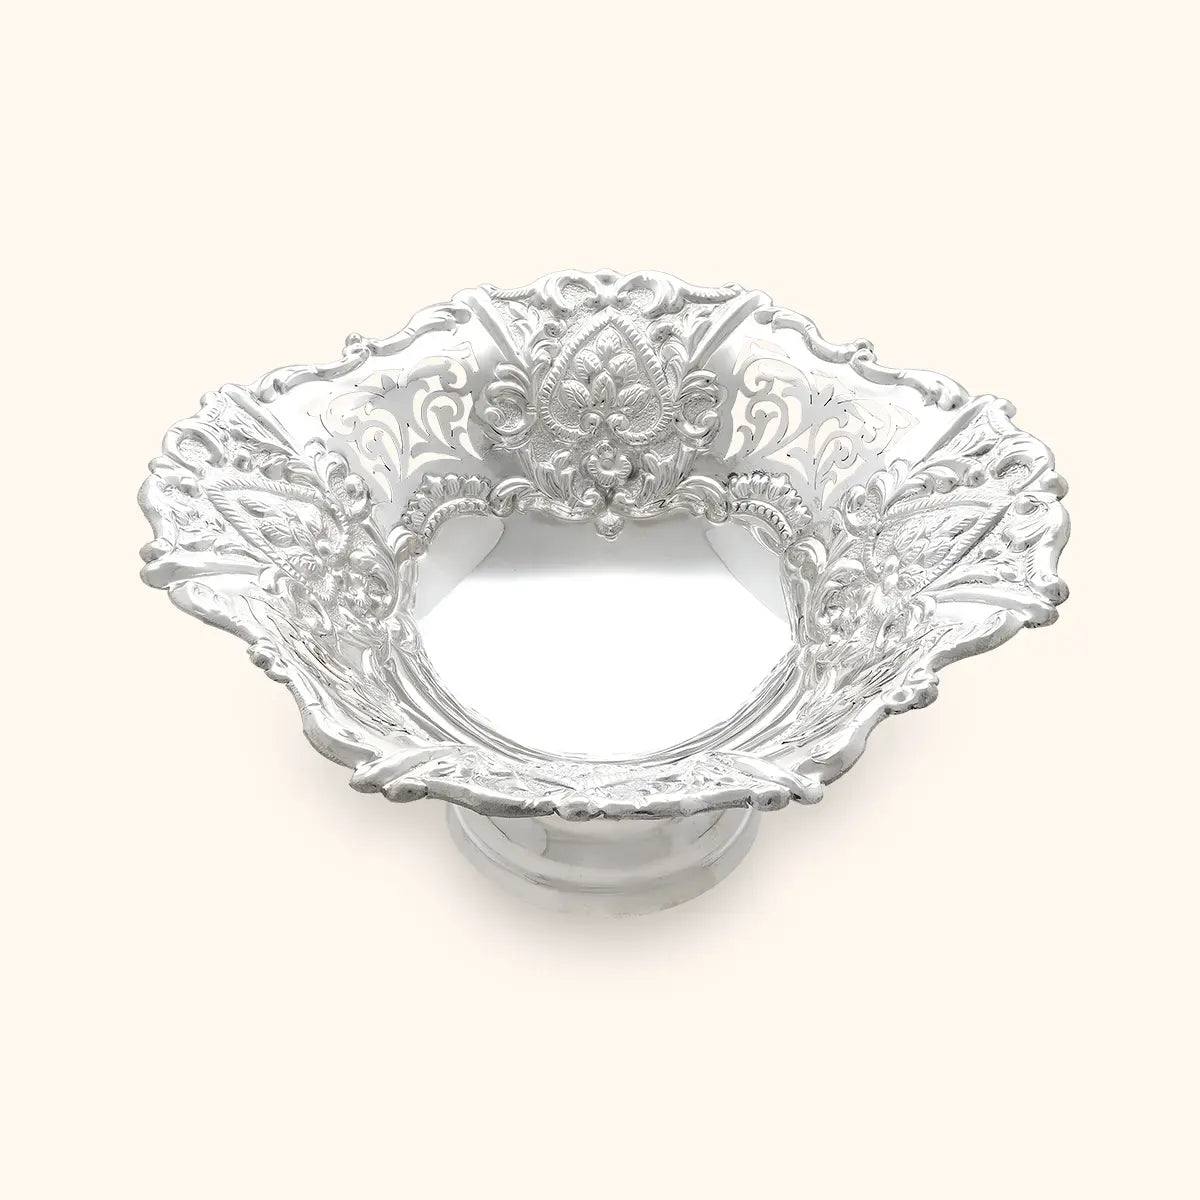 Silver Fruit Display Bowl